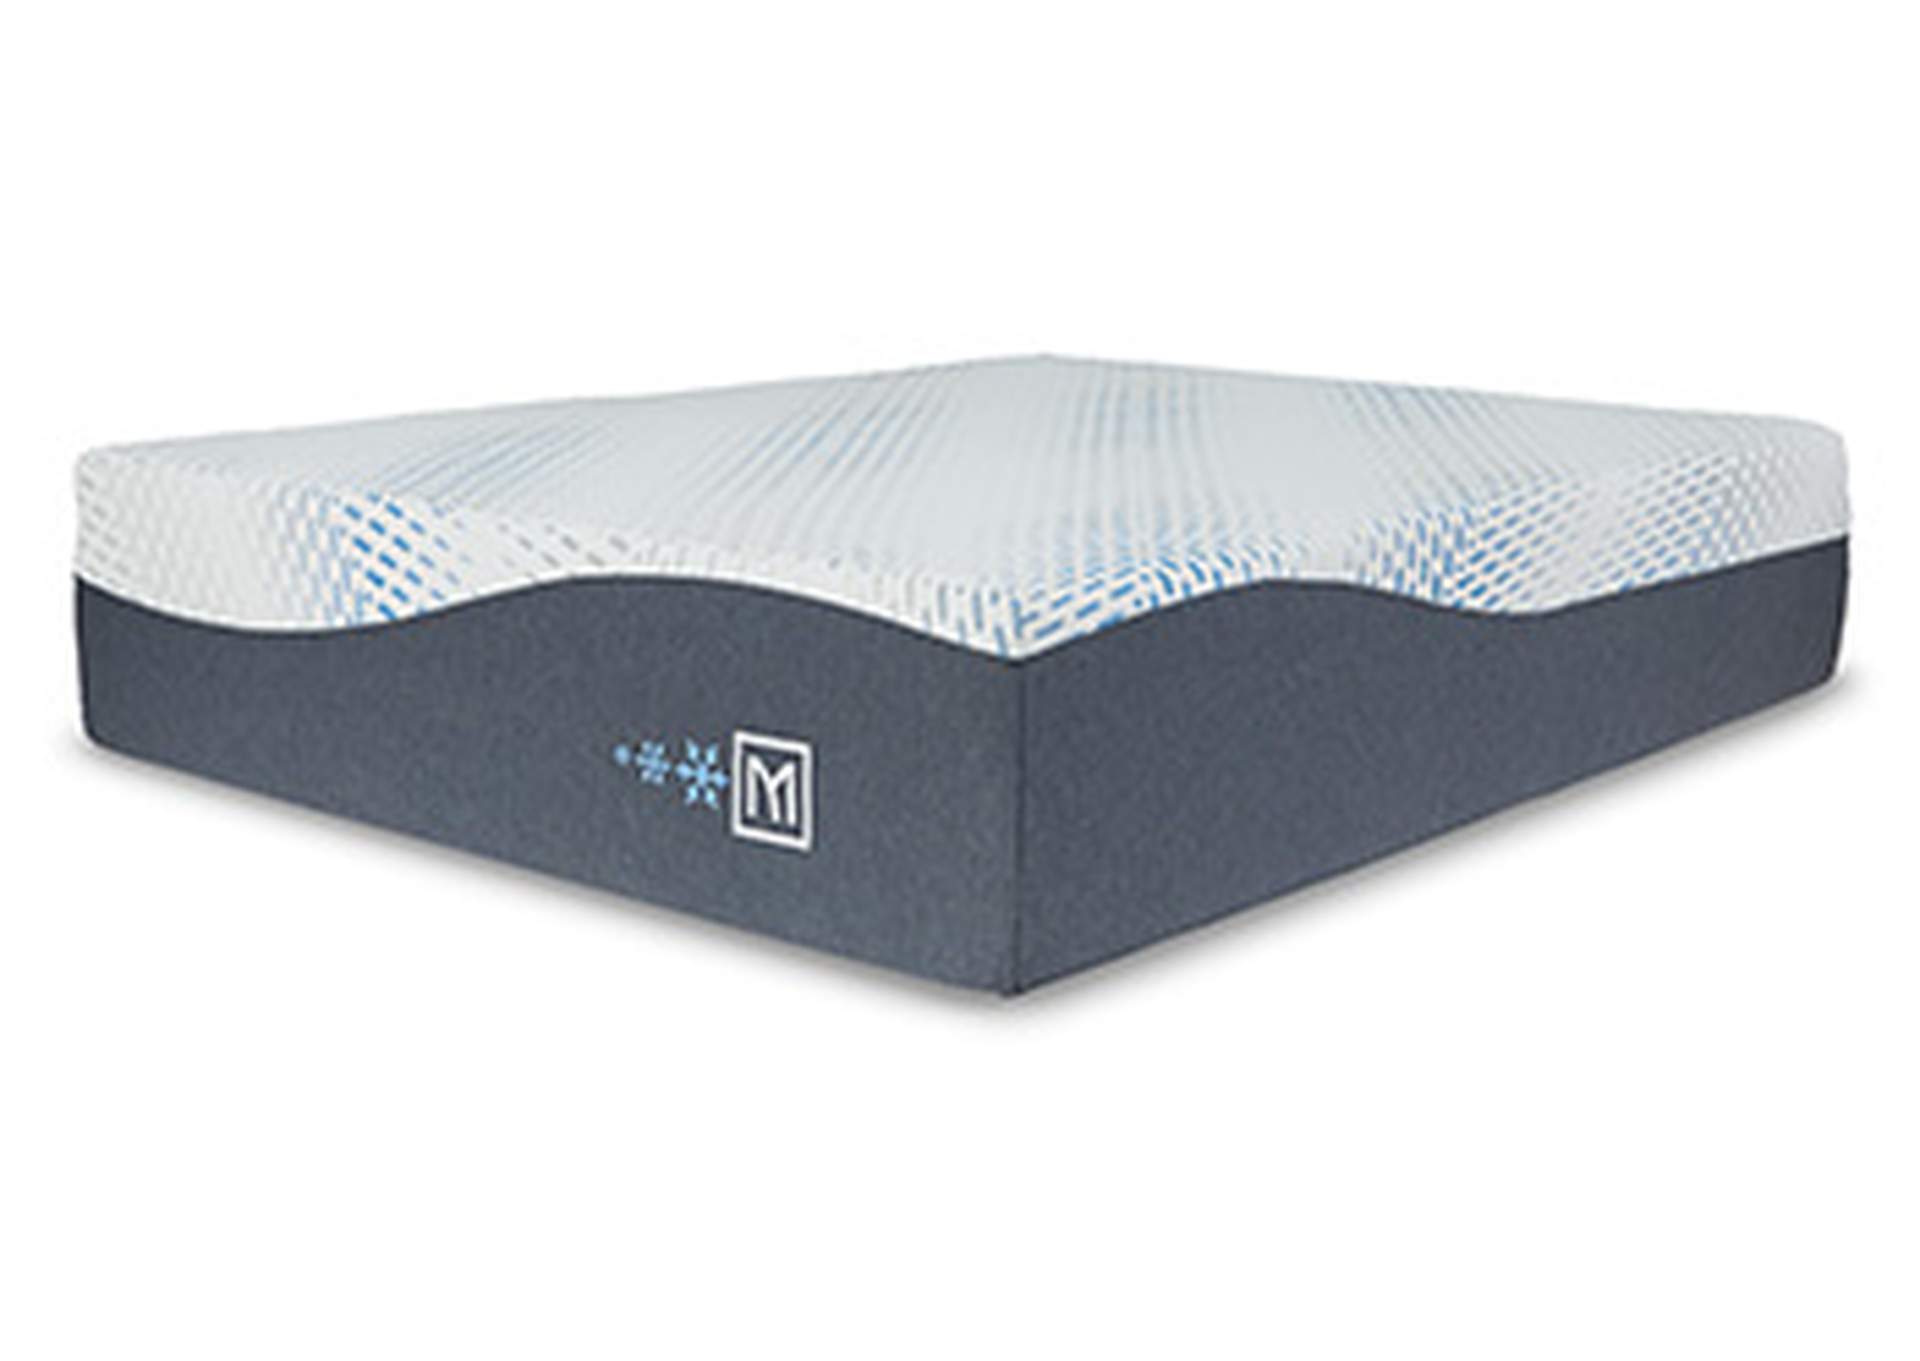 Millennium Cushion Firm Gel Memory Foam Hybrid Queen Mattress,Sierra Sleep by Ashley